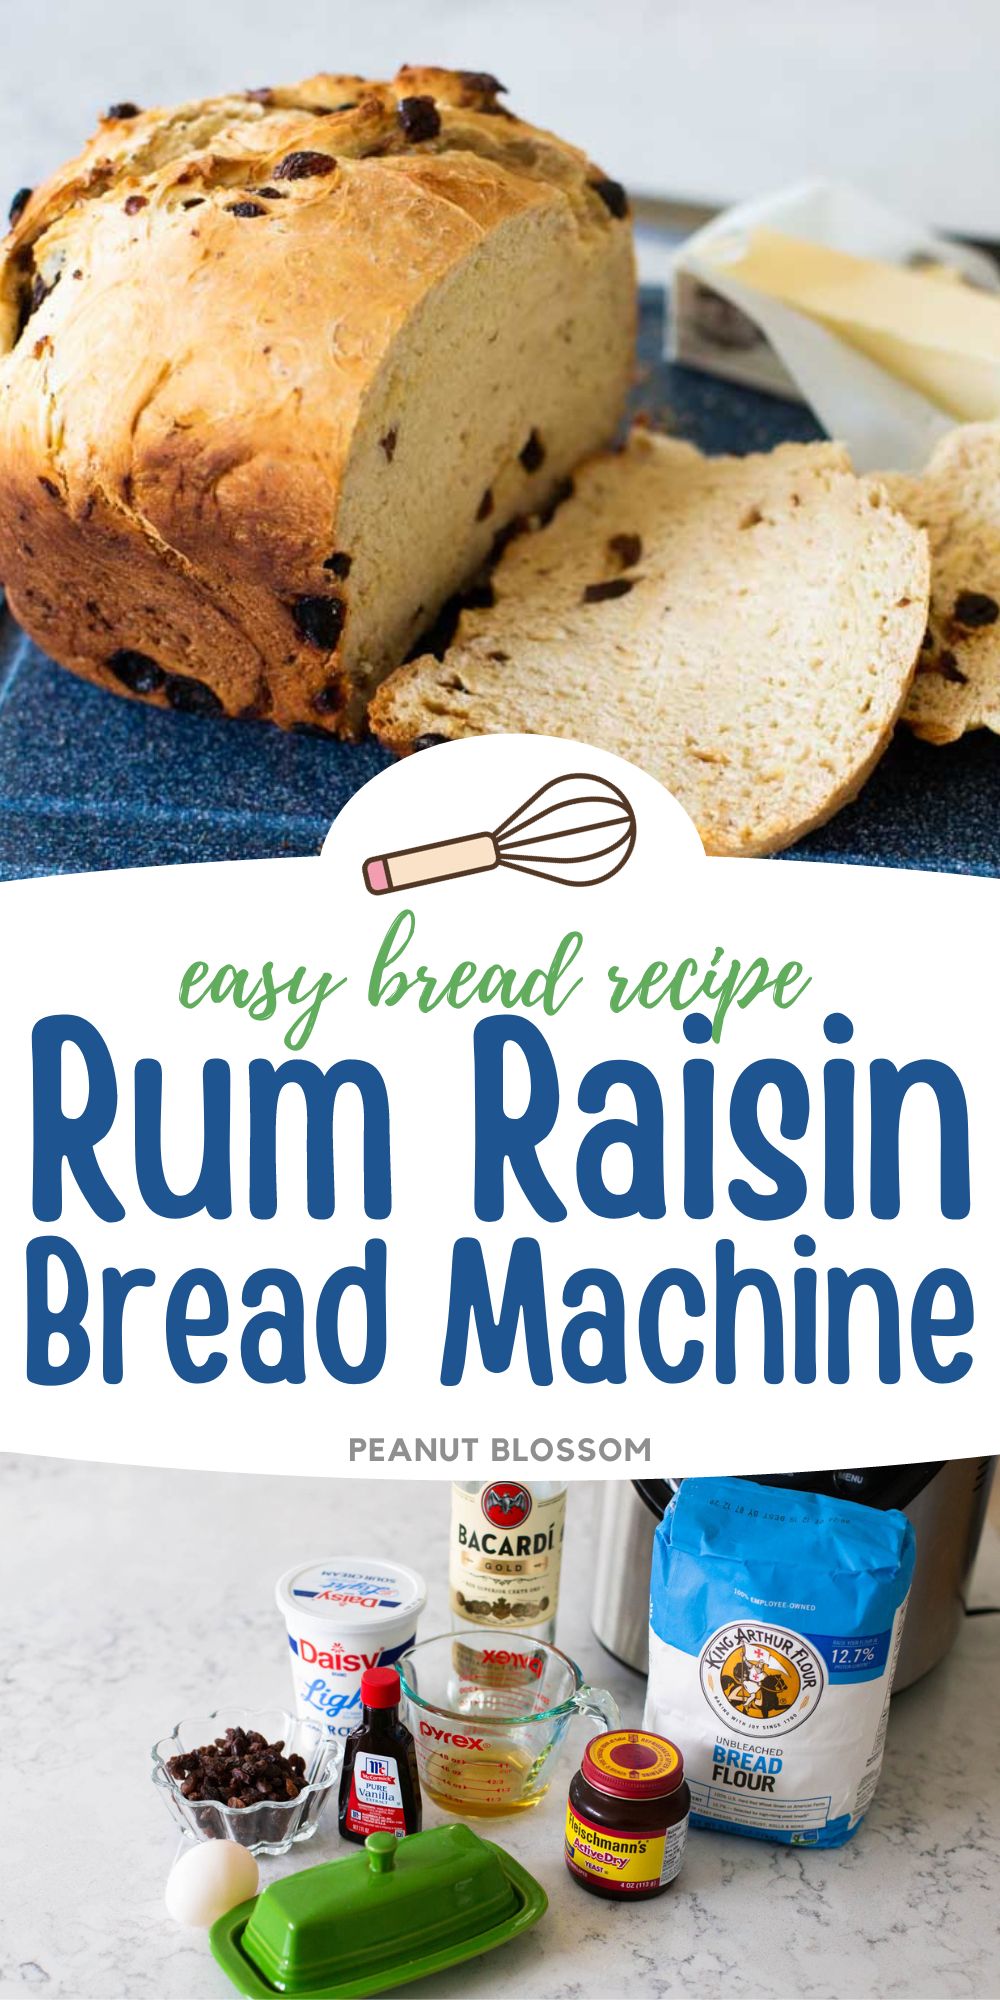 Cinnamon Raisin Bread for the Bread Machine Recipe